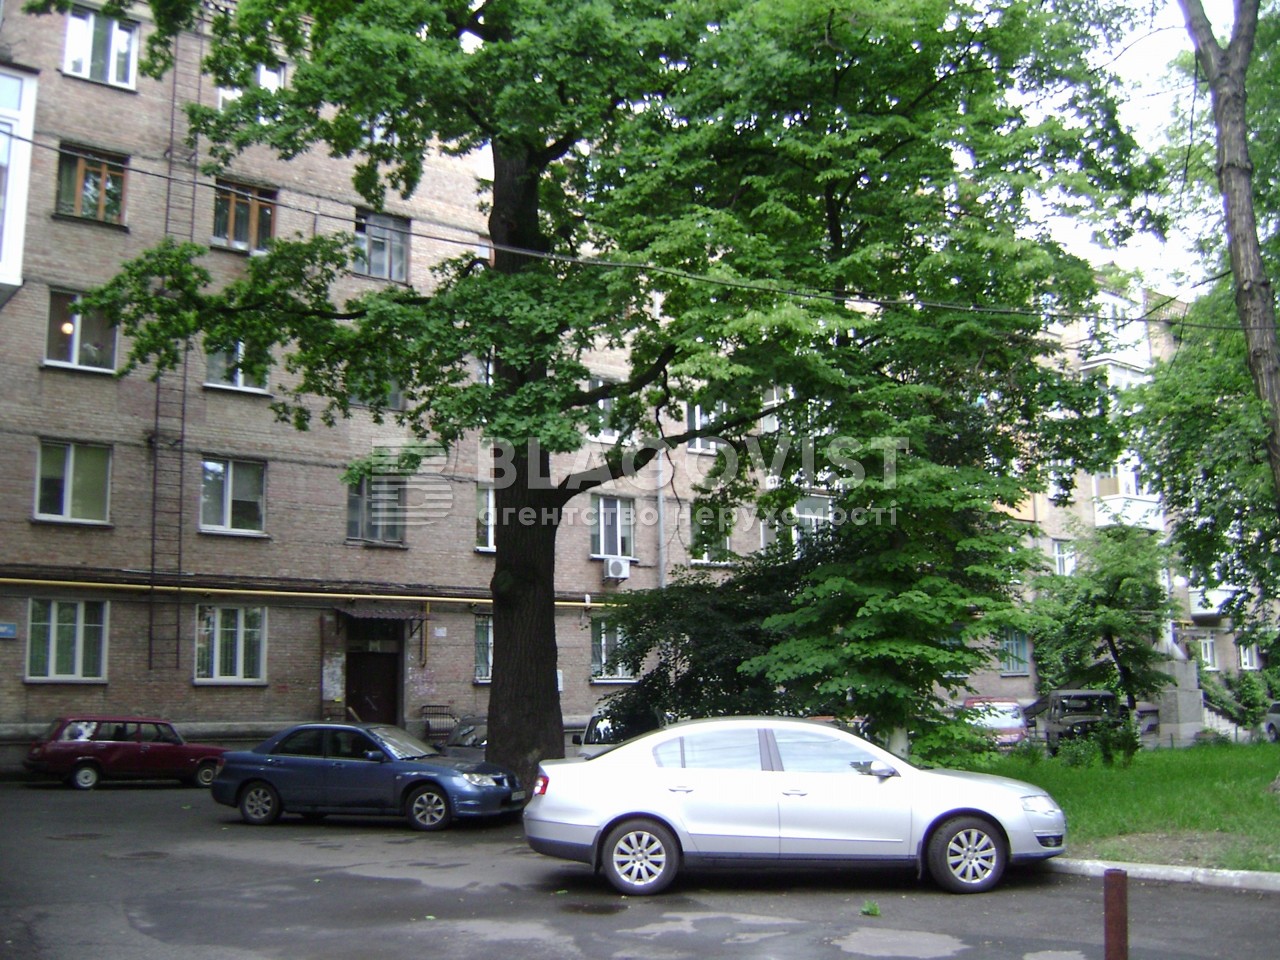  Нежилое помещение, H-50694, Борщаговская, Киев - Фото 3